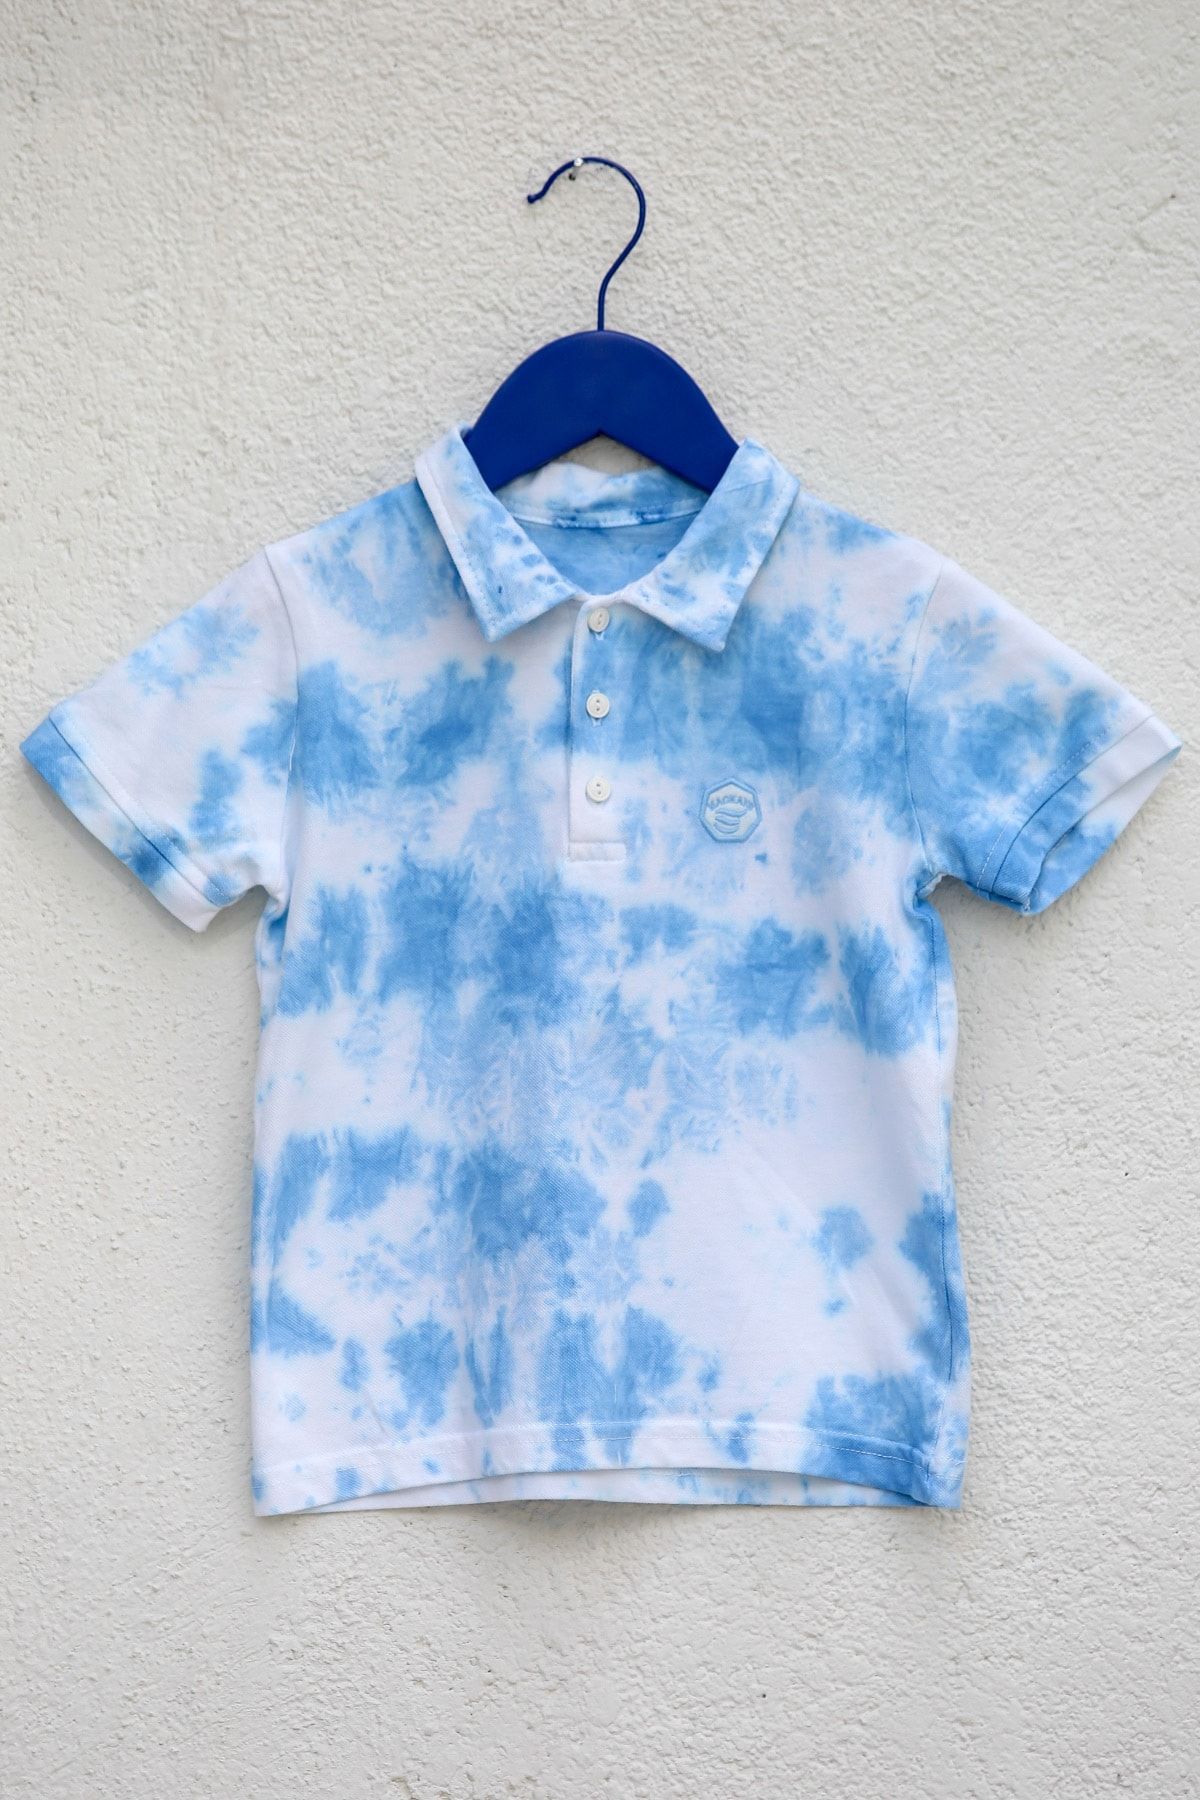 indokids Erkek Çocuk Bebe Mavi Gömlek Yaka Düğme Detaylı Nakışlı Batik Desenli Tshirt IND999962